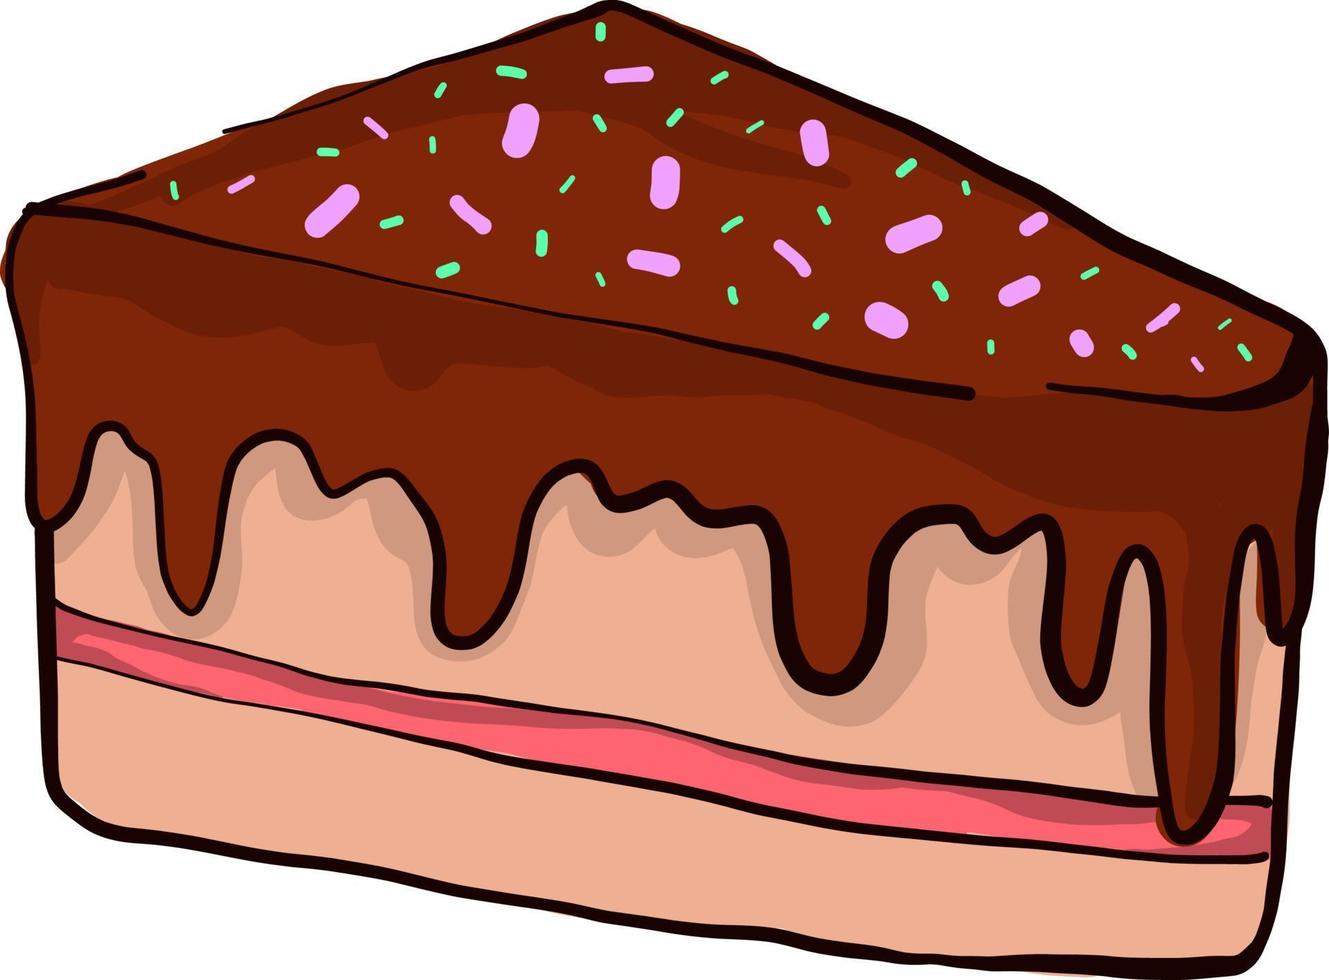 Morceau de gâteau au chocolat , illustration, vecteur sur fond blanc